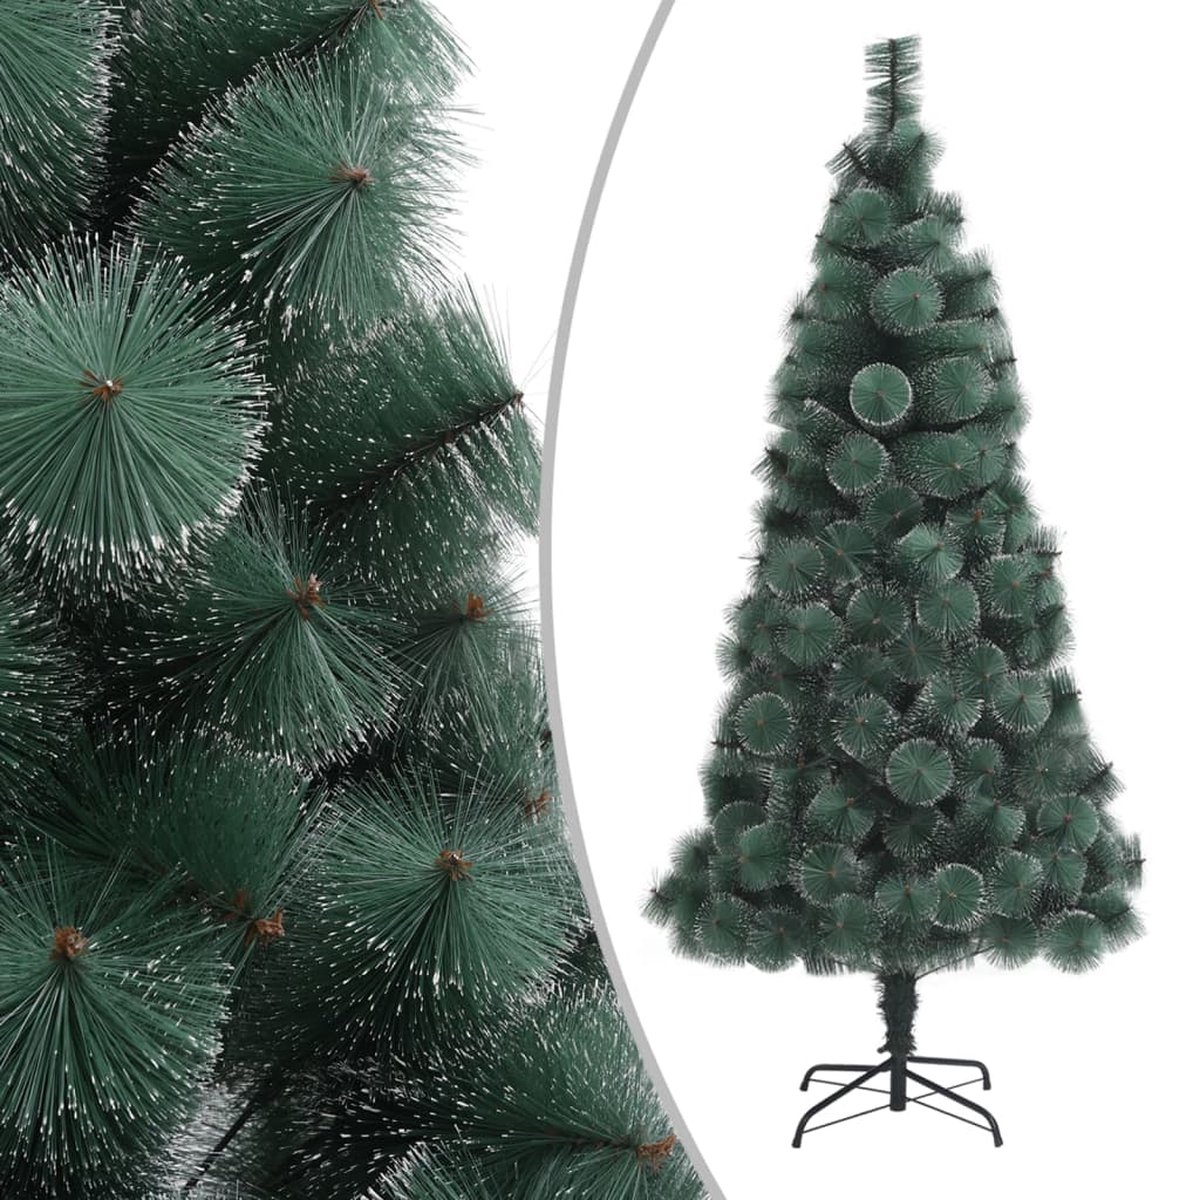 VidaLife Kunstkerstboom met standaard 180 cm PET groen